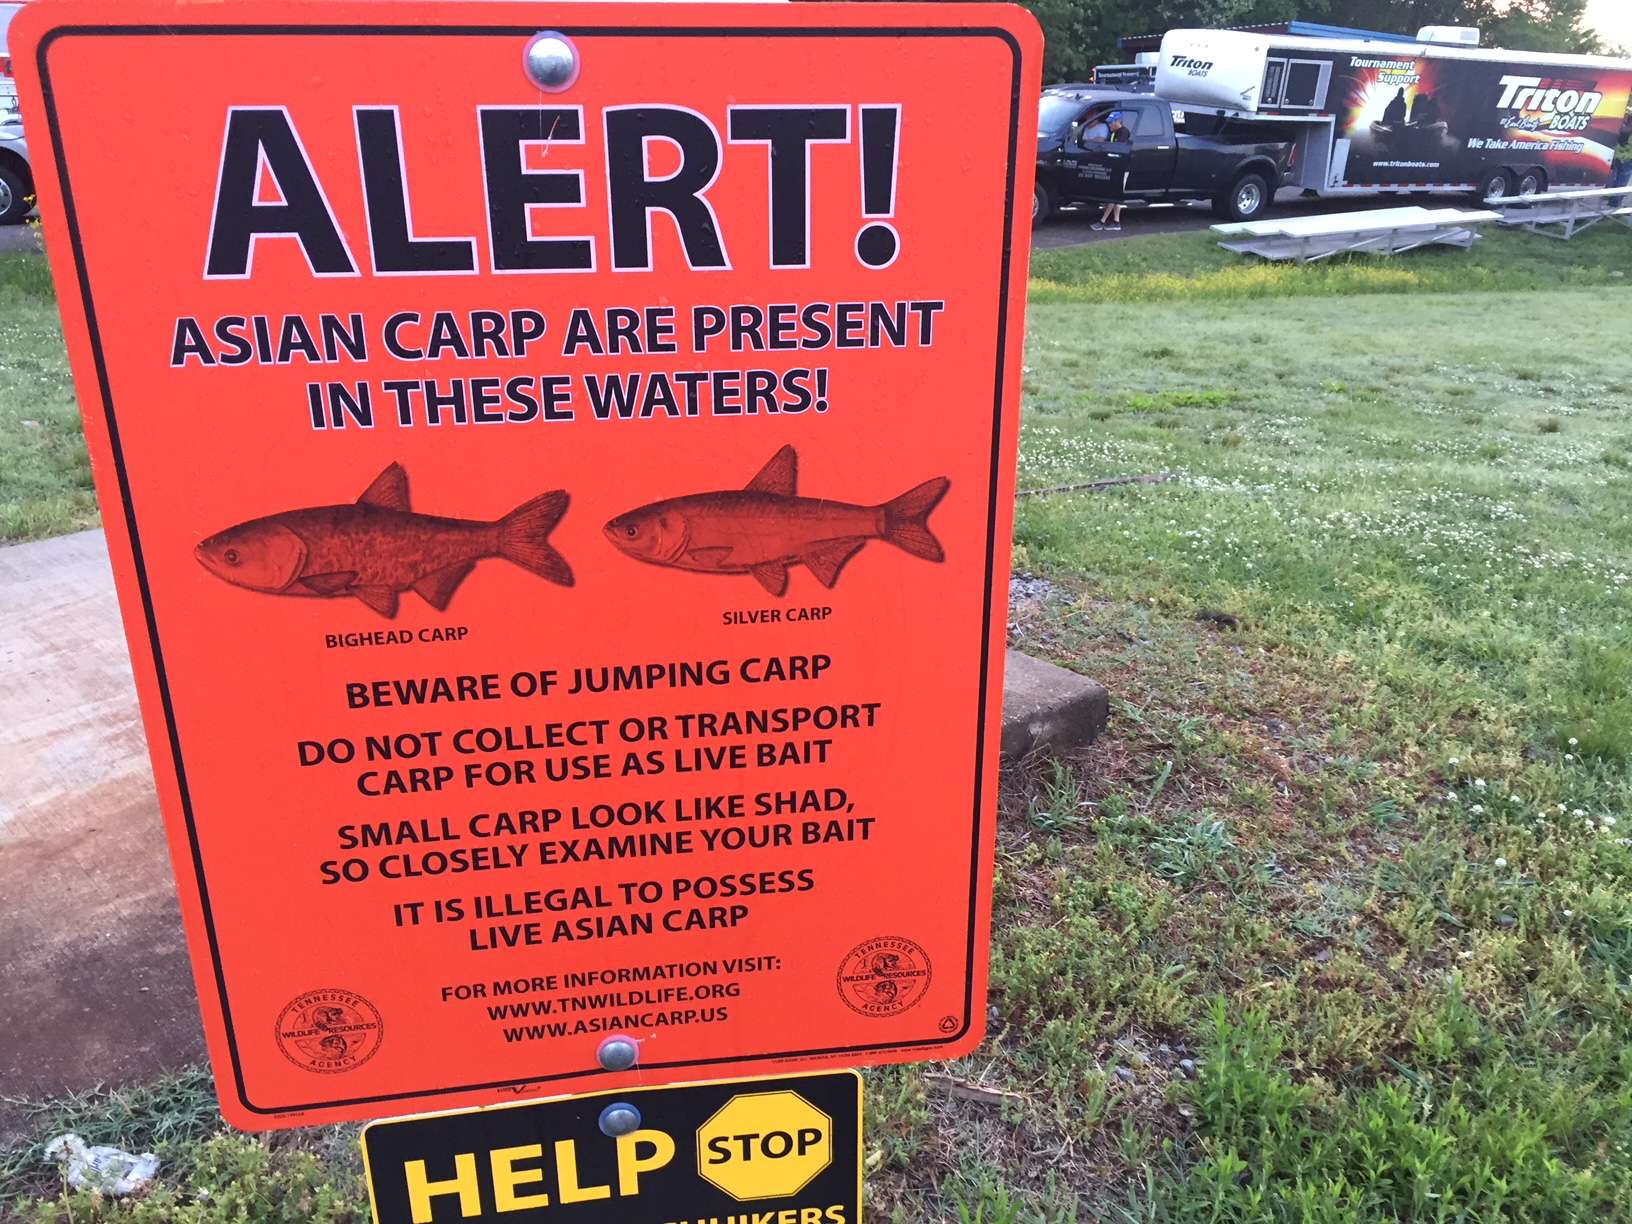 'ปลาคาร์พเอเชีย' อาจได้ชื่อใหม่หลังกระแสทำร้ายคนเชื้อสายเอเชียในสหรัฐฯ